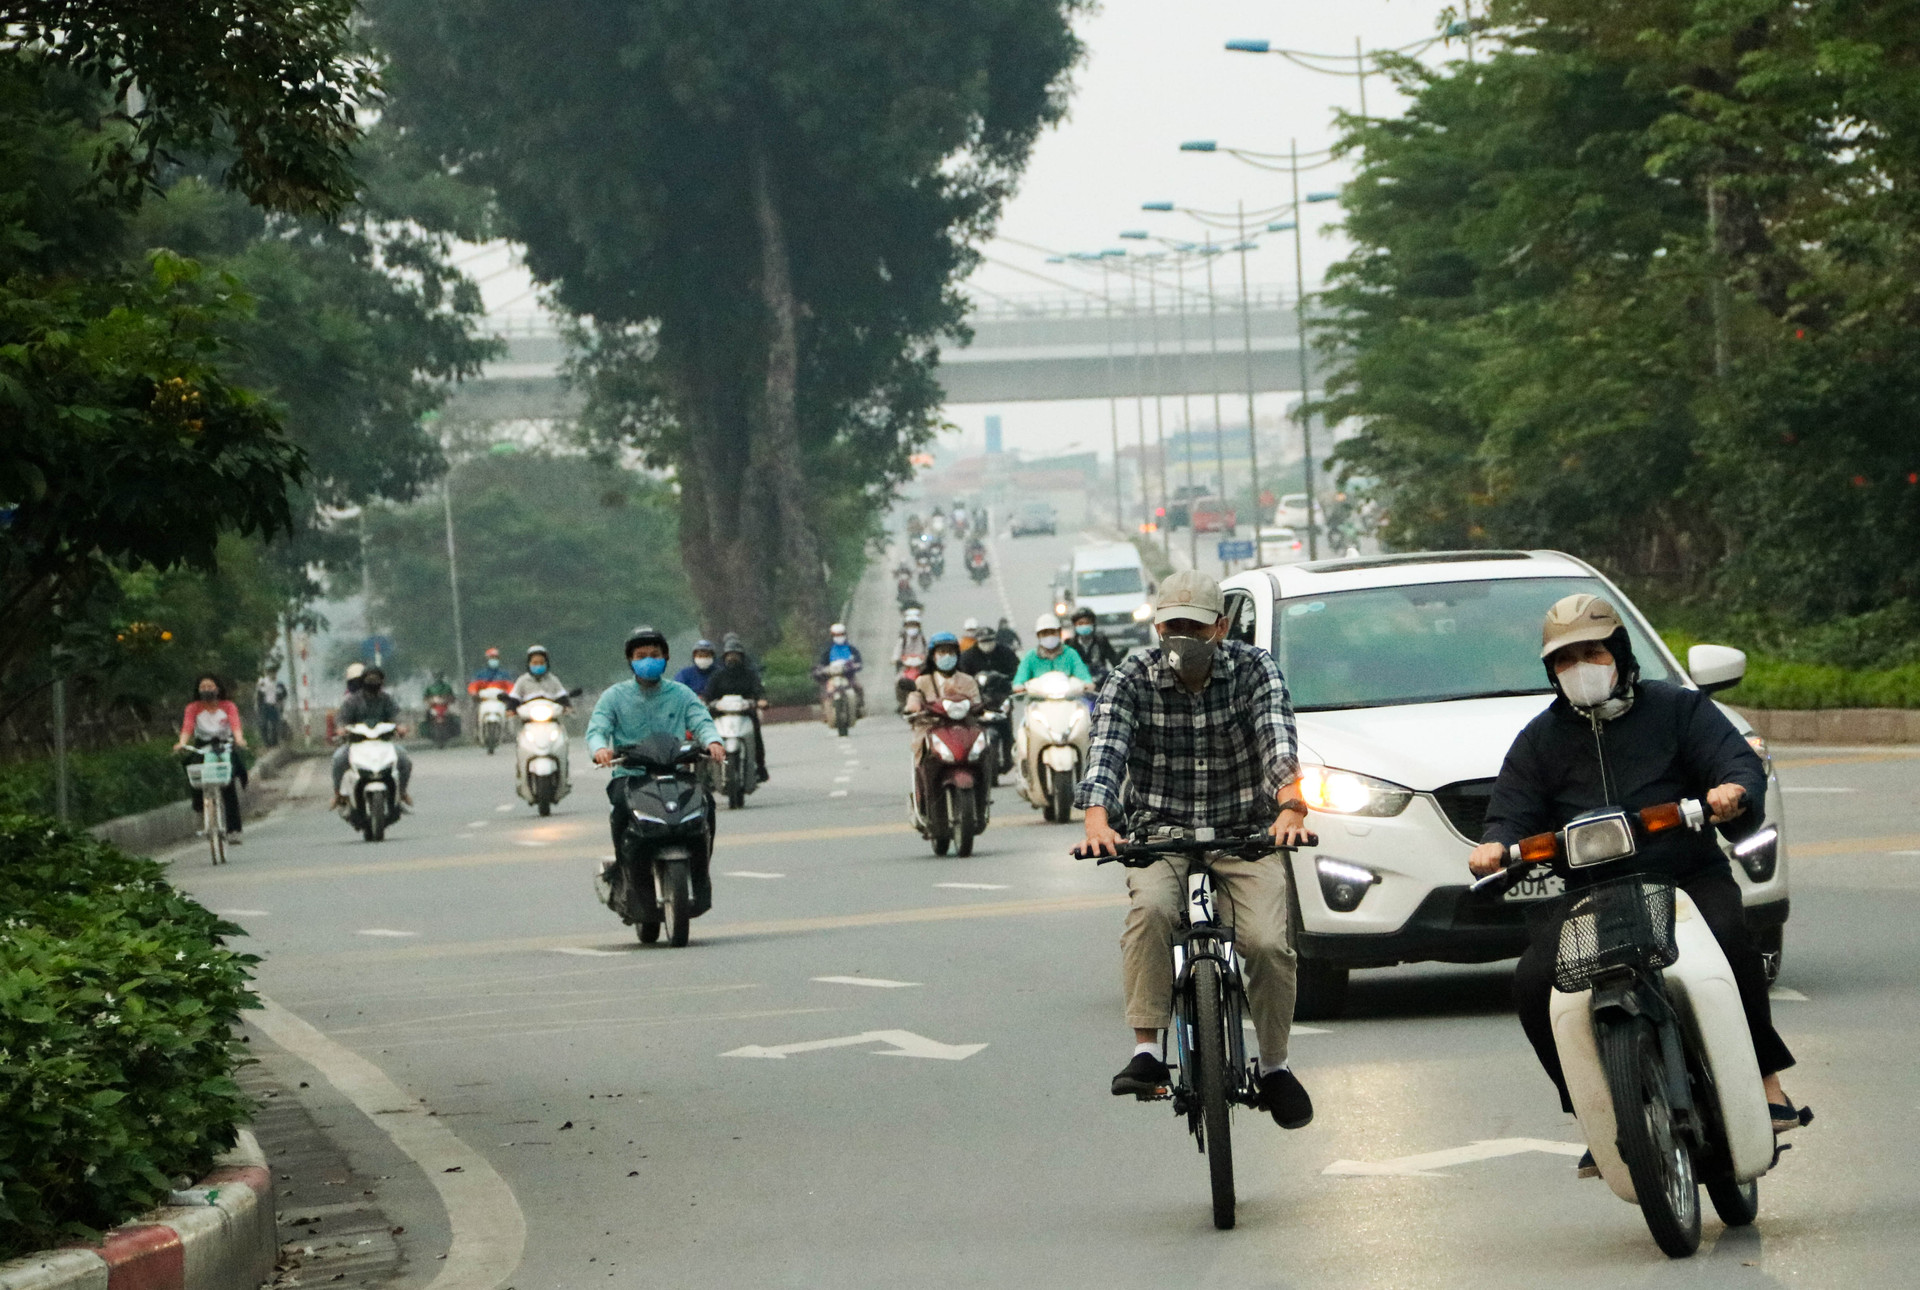 Chùm ảnh: Các tụ điểm công cộng tại Hà Nội dần trở nên đông đúc sau một tuần thực hiện cách ly xã hội - Ảnh 9.